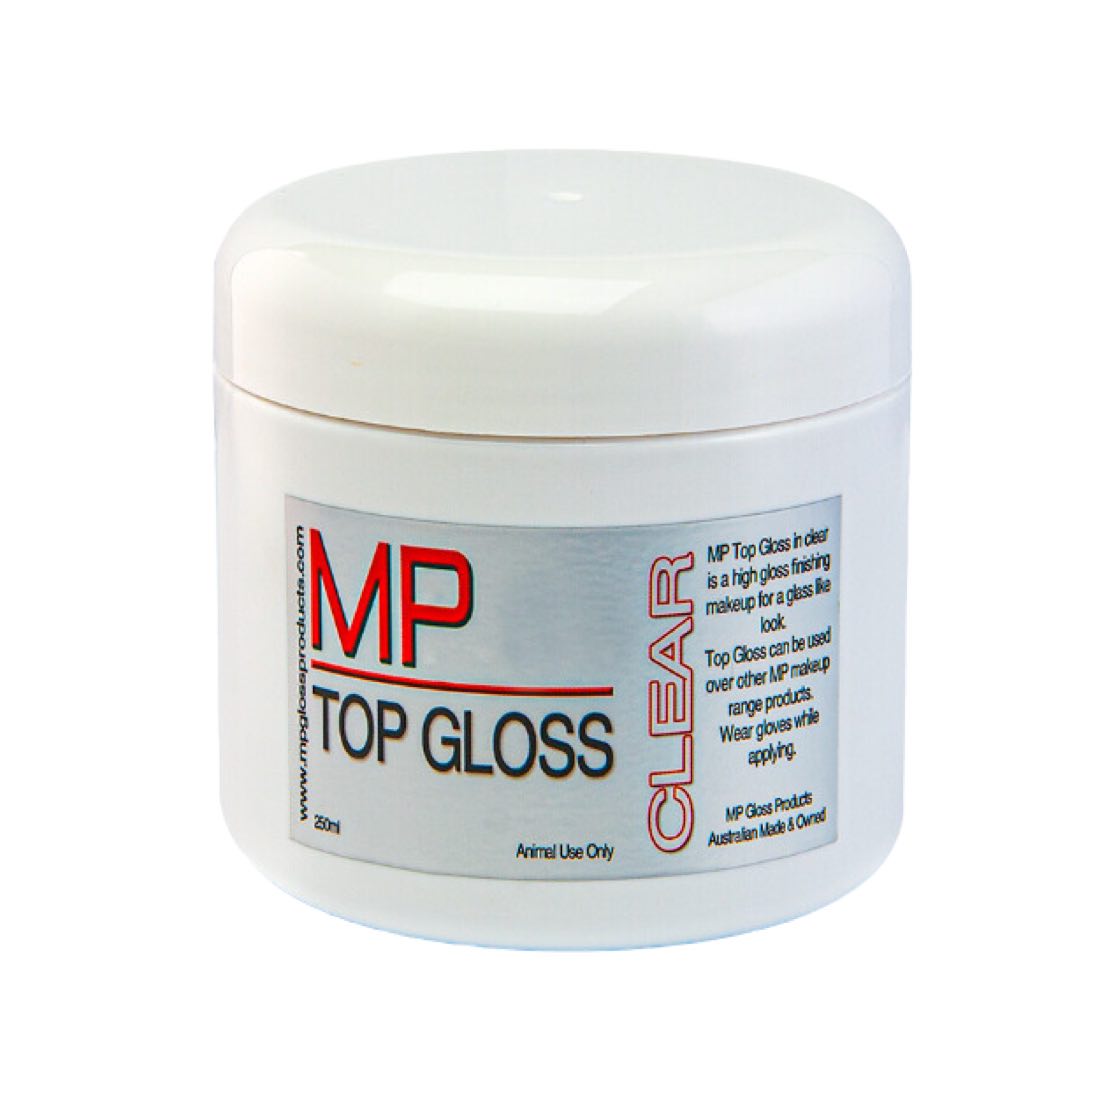 MP Top Gloss